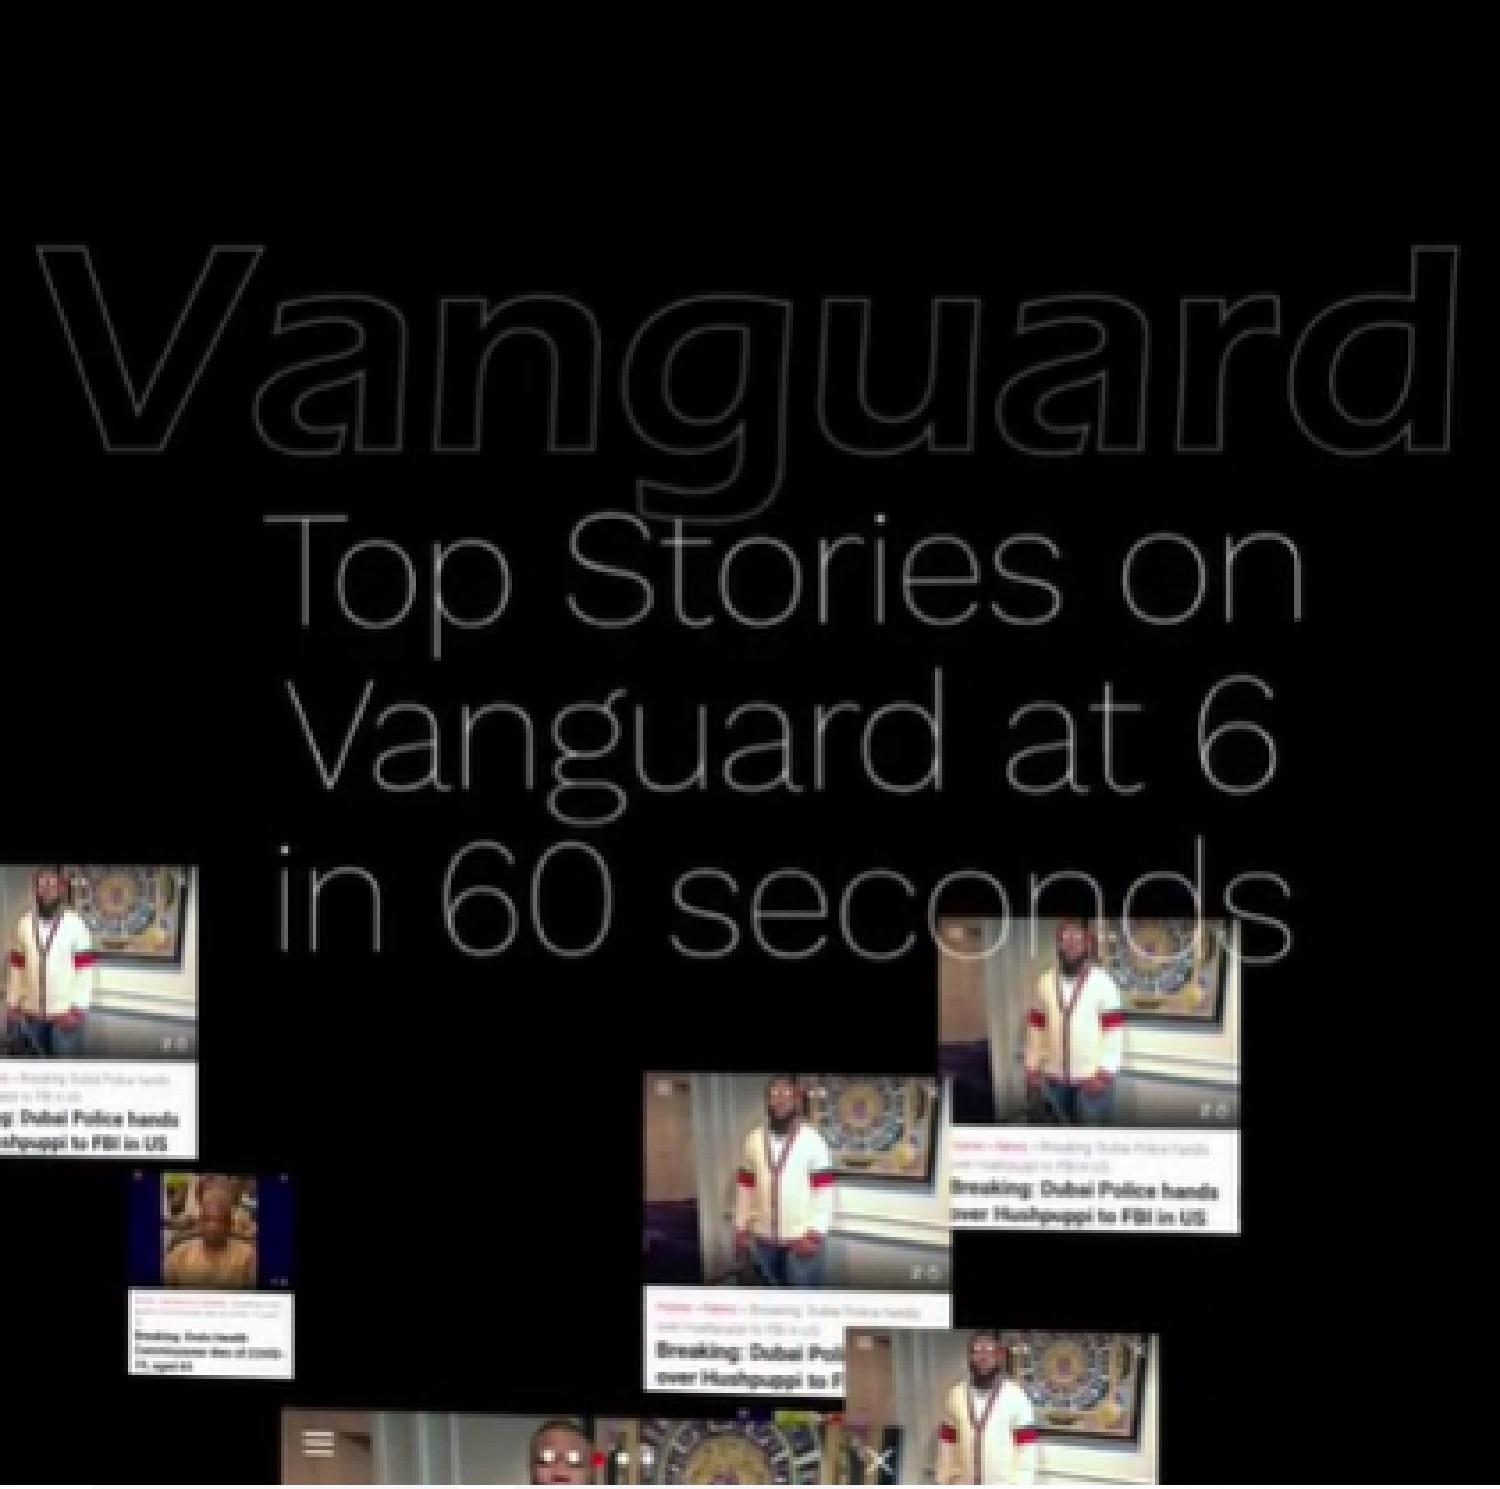 Vanguard major headlines in 60 seconds